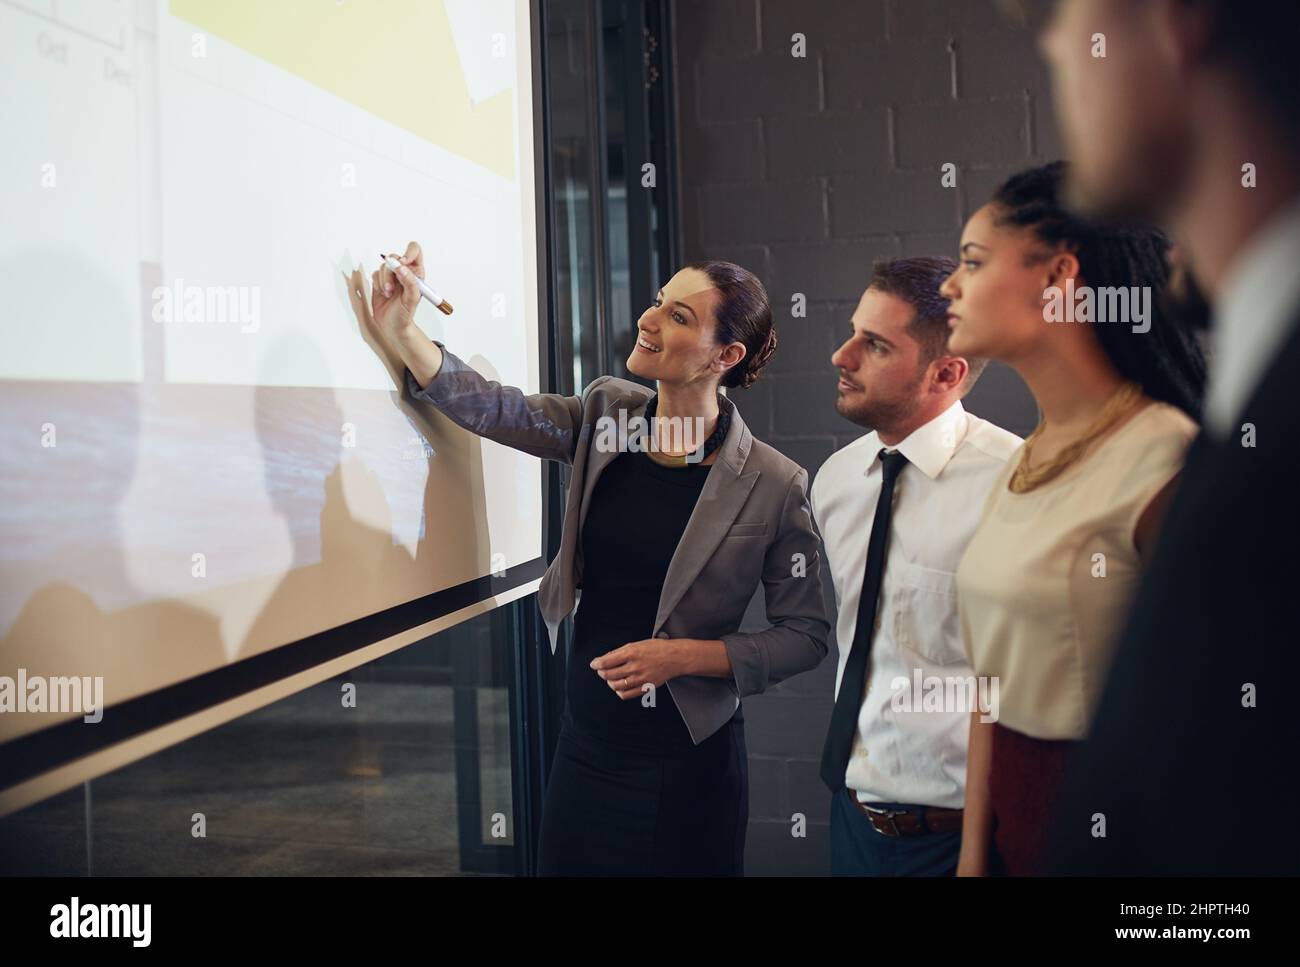 Faire participer son équipe au processus commercial. Photo d'un cadre donnant une présentation sur un écran de projection à un groupe de collègues dans un Banque D'Images